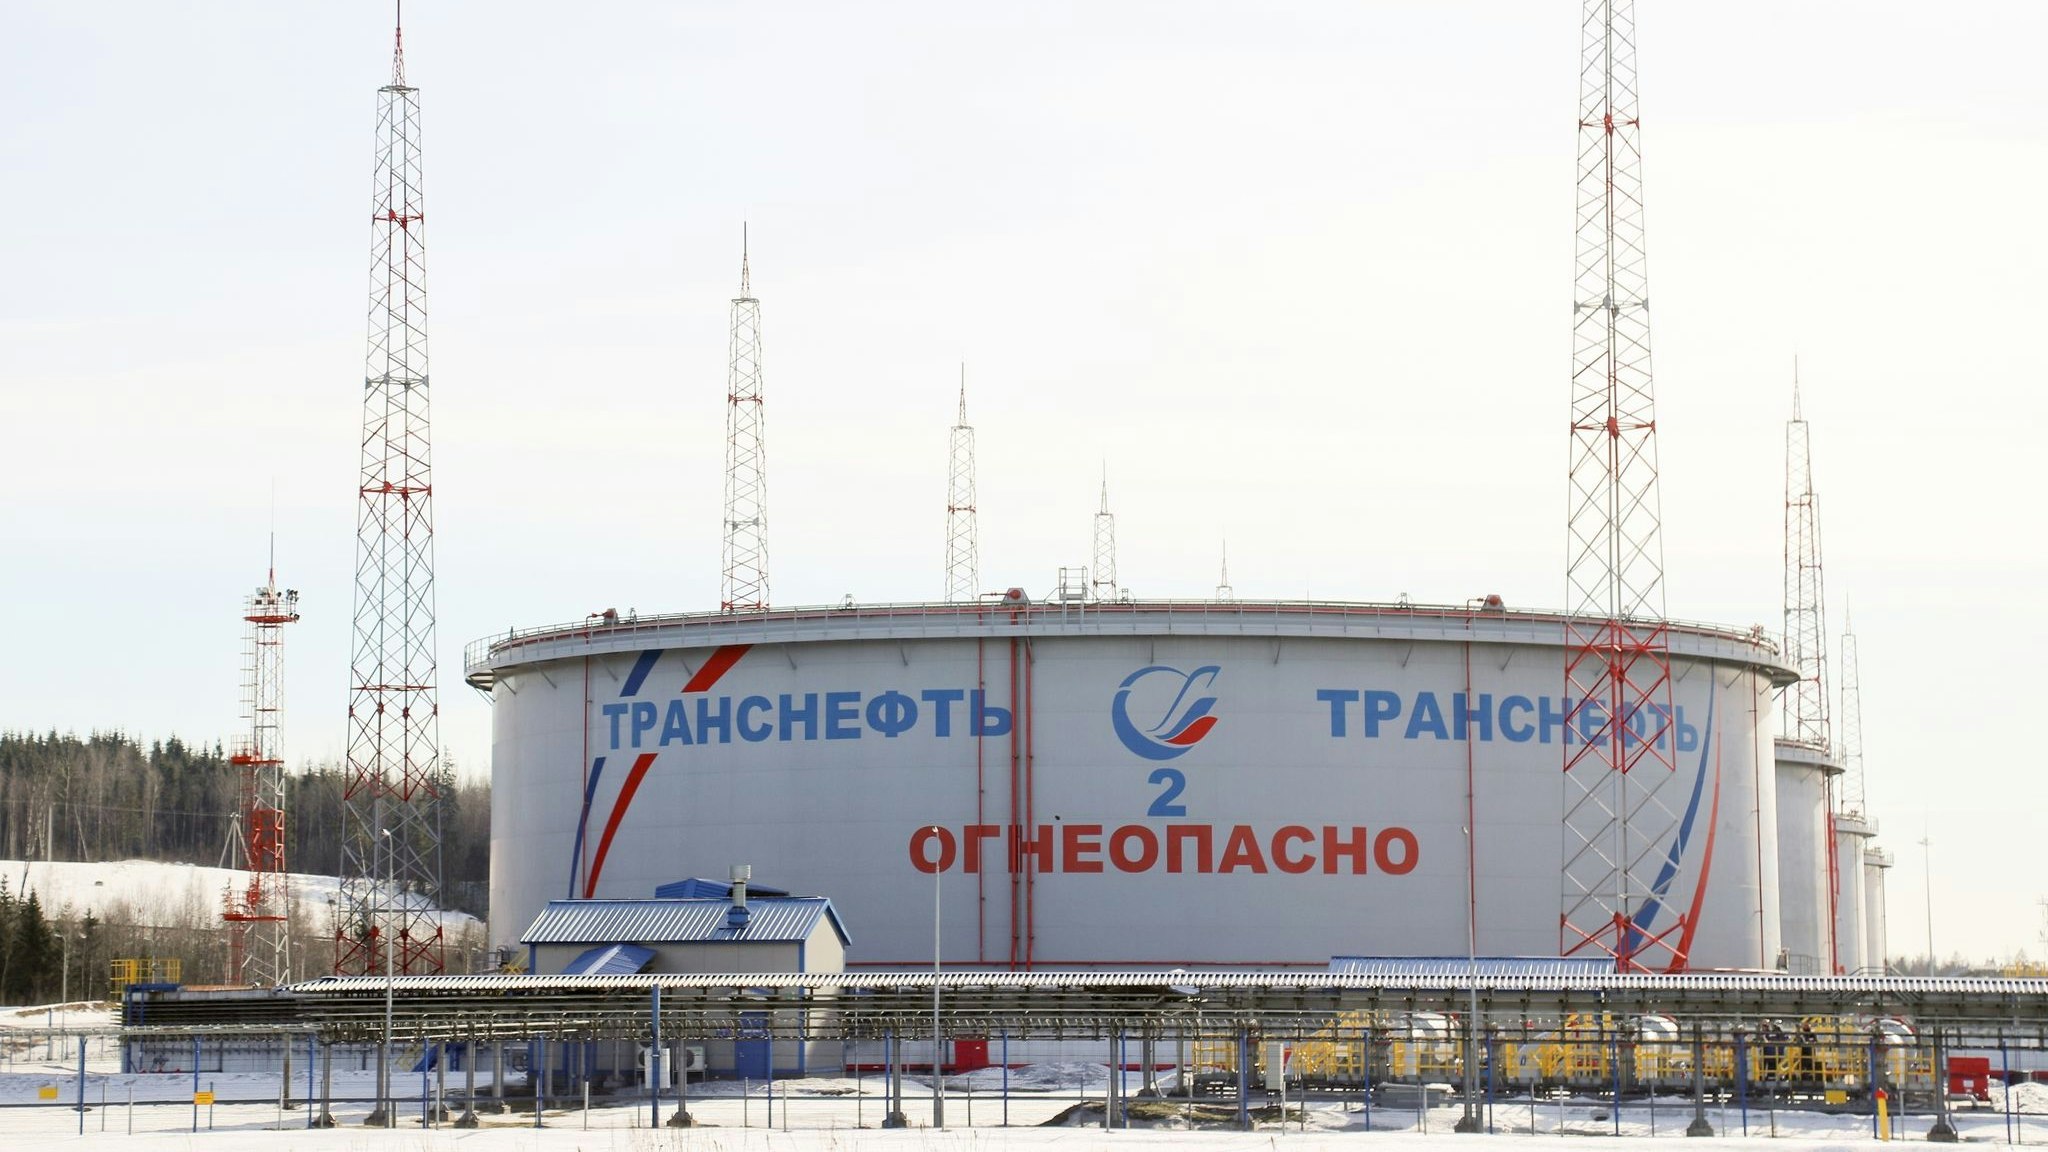 Tanks des staatlichen Ölpipeline-Betreiber „Transneft“ im Ölterminal von Ust-Luga. Foto: dpa/Stringer